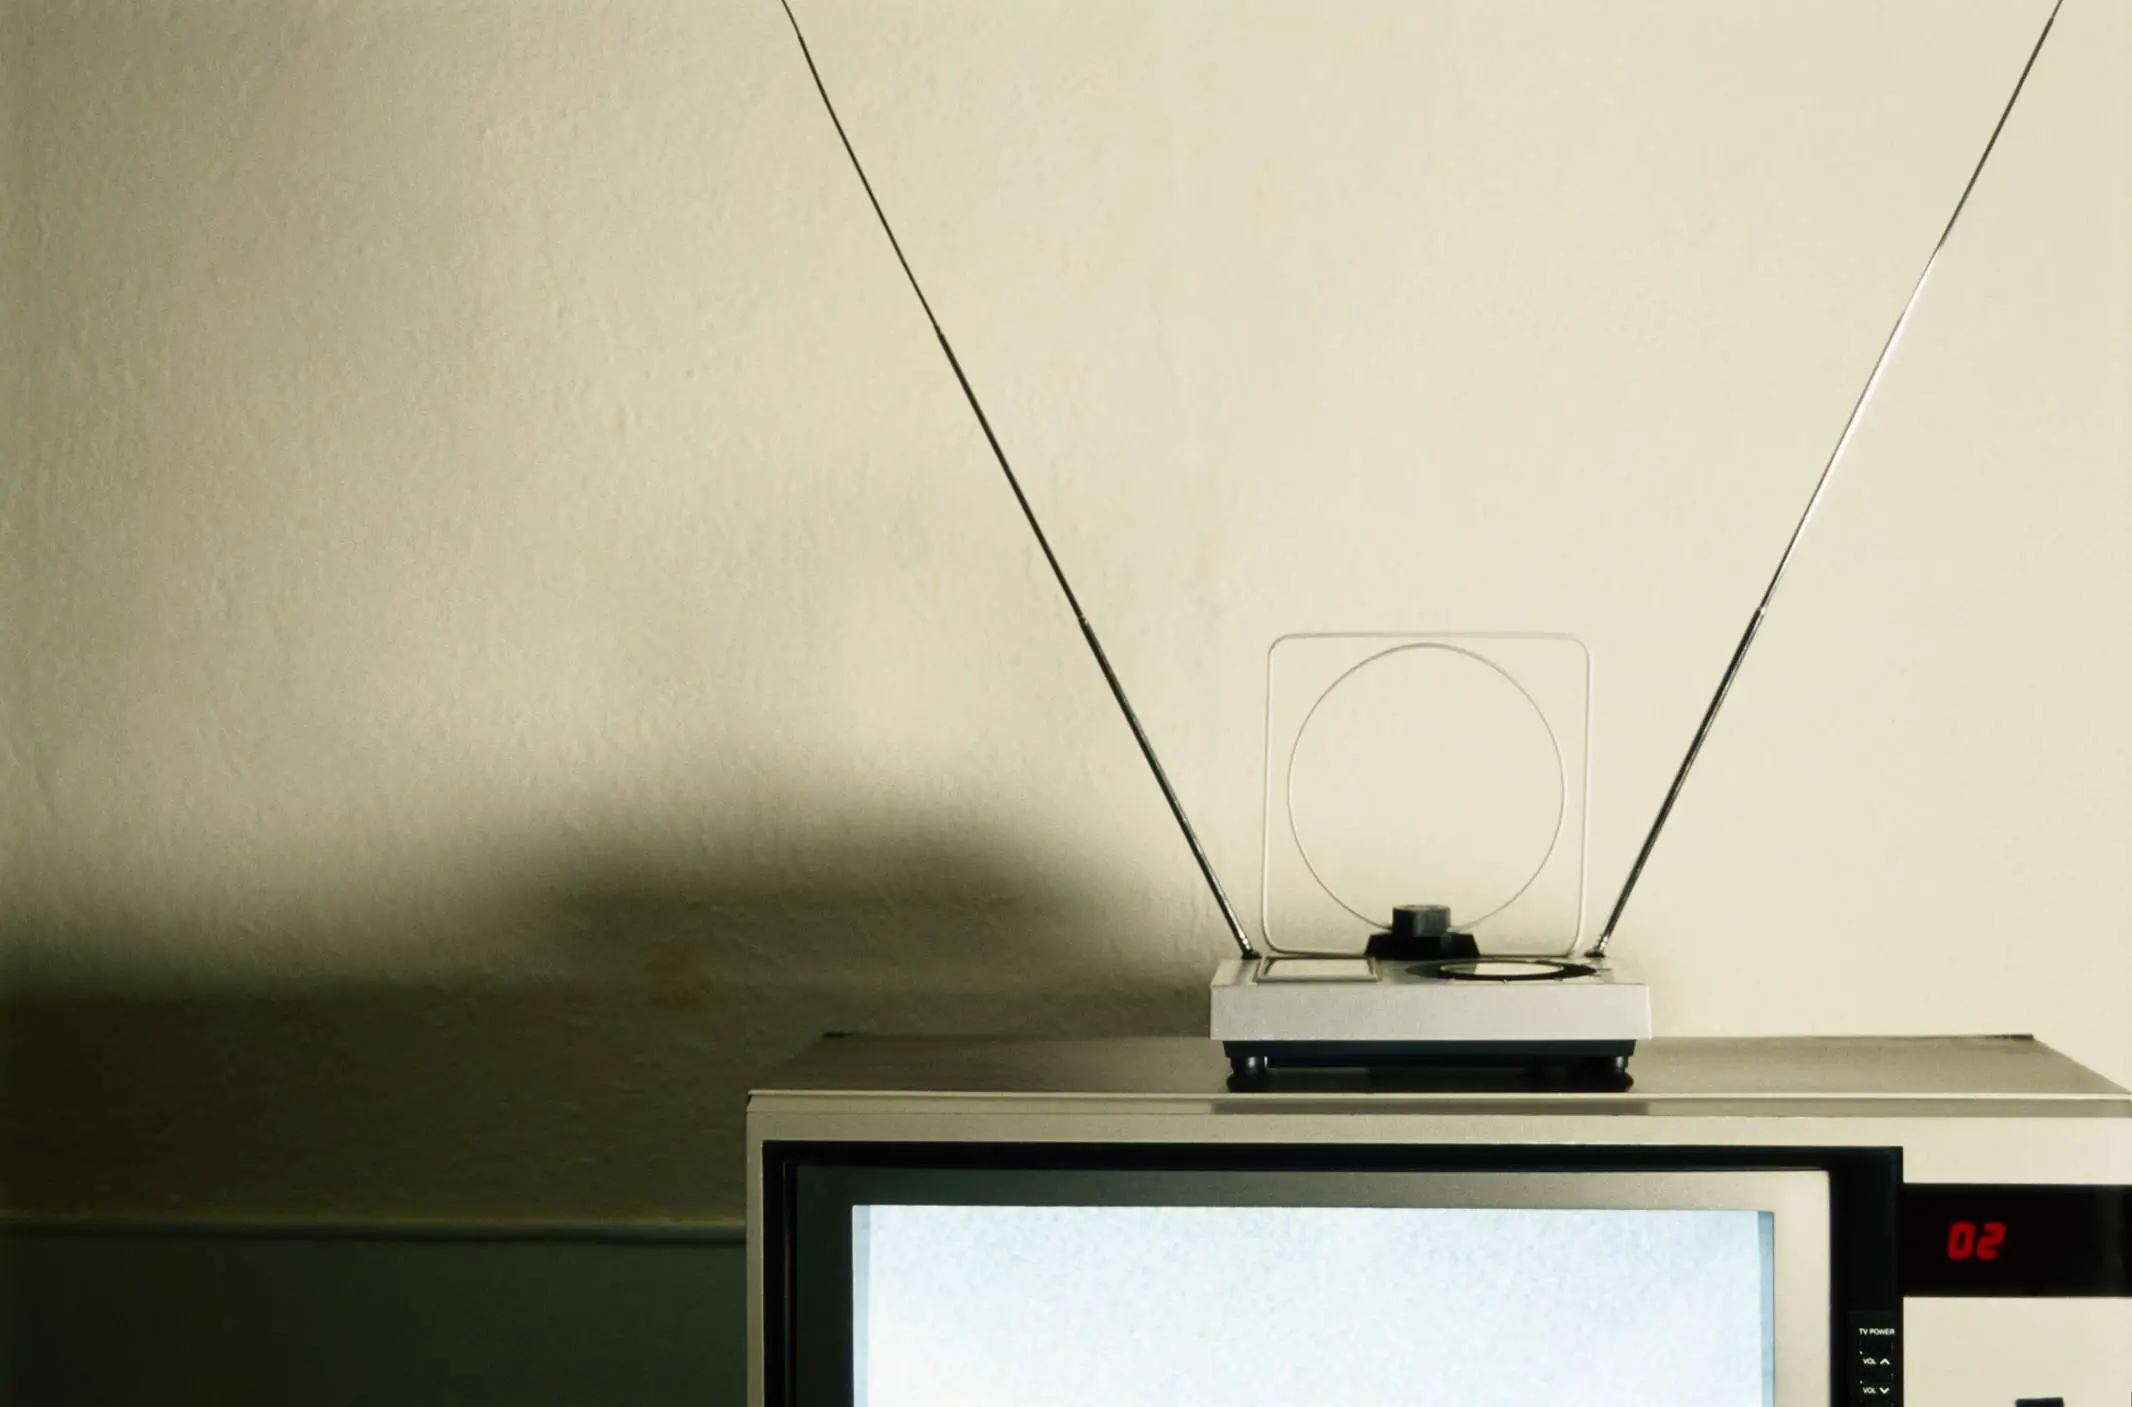 Televisão com antena